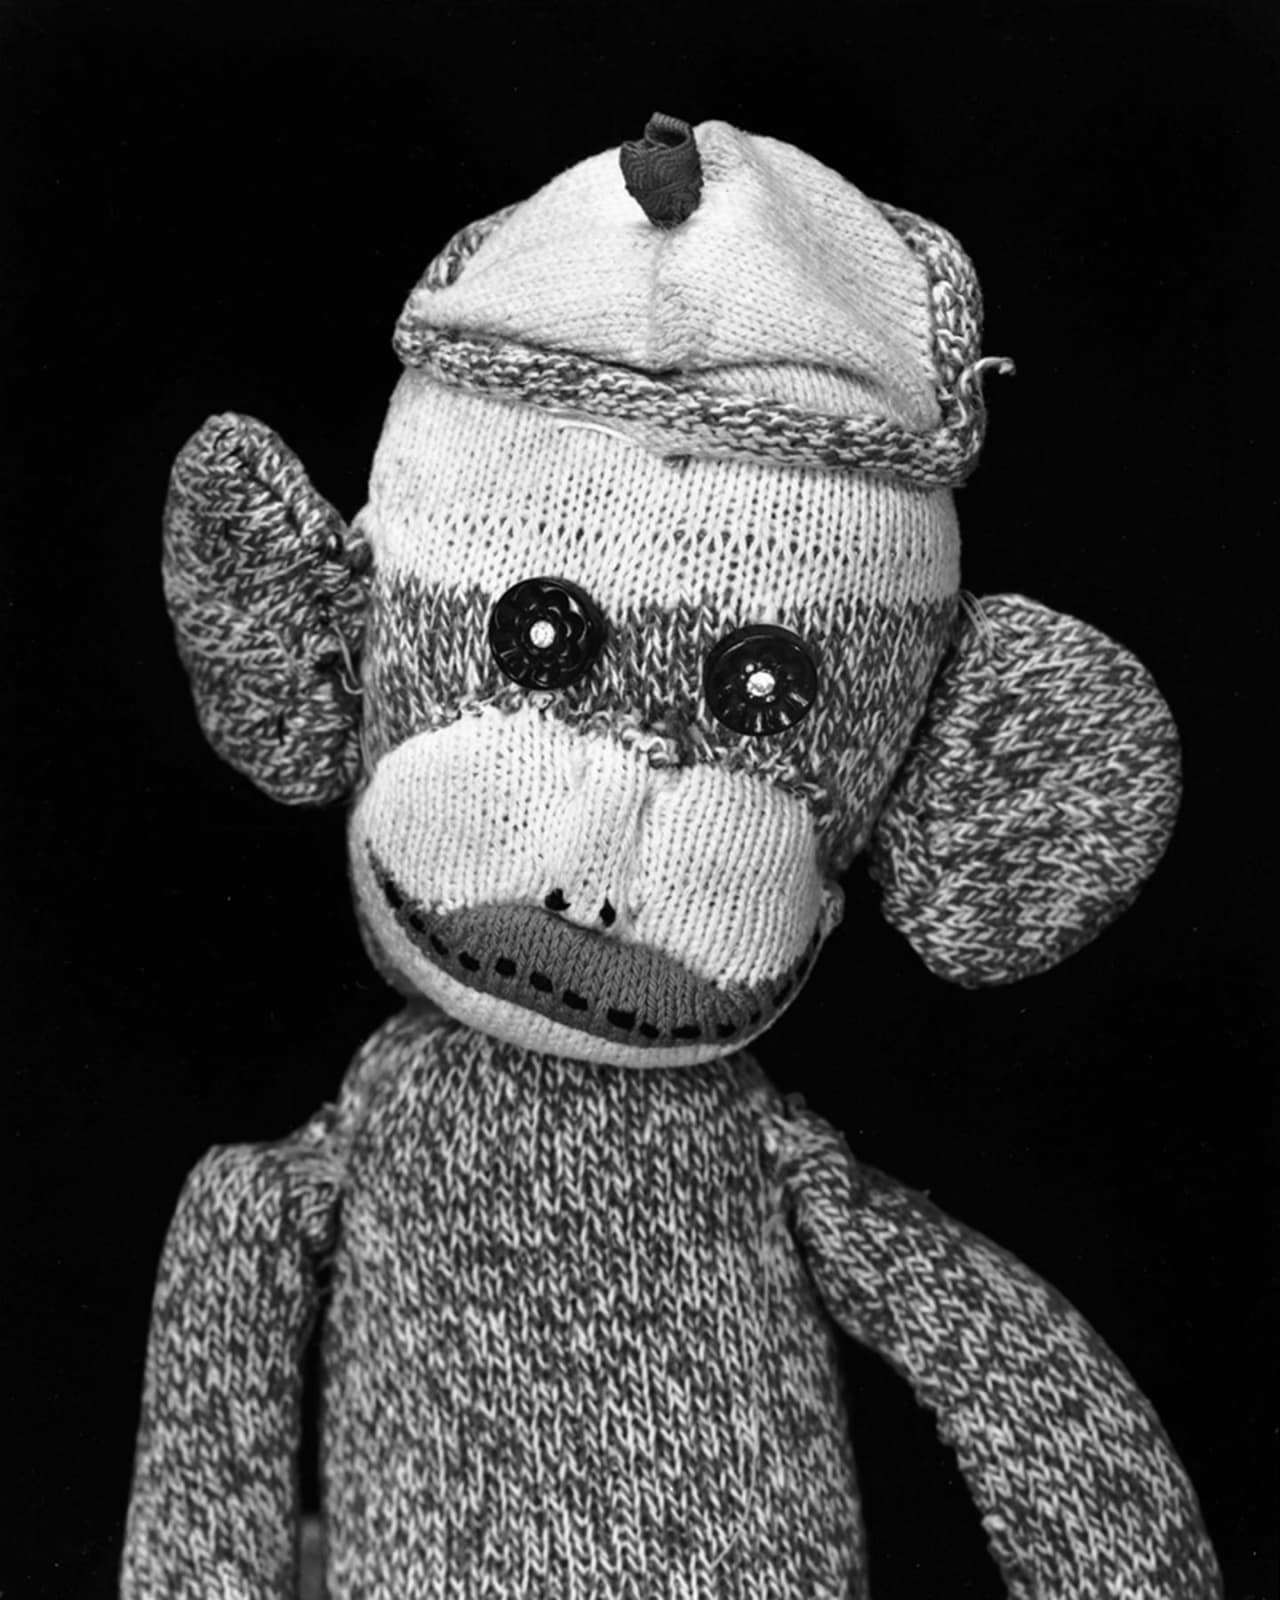 Arne Svenson, Sock Monkey 202, 2002